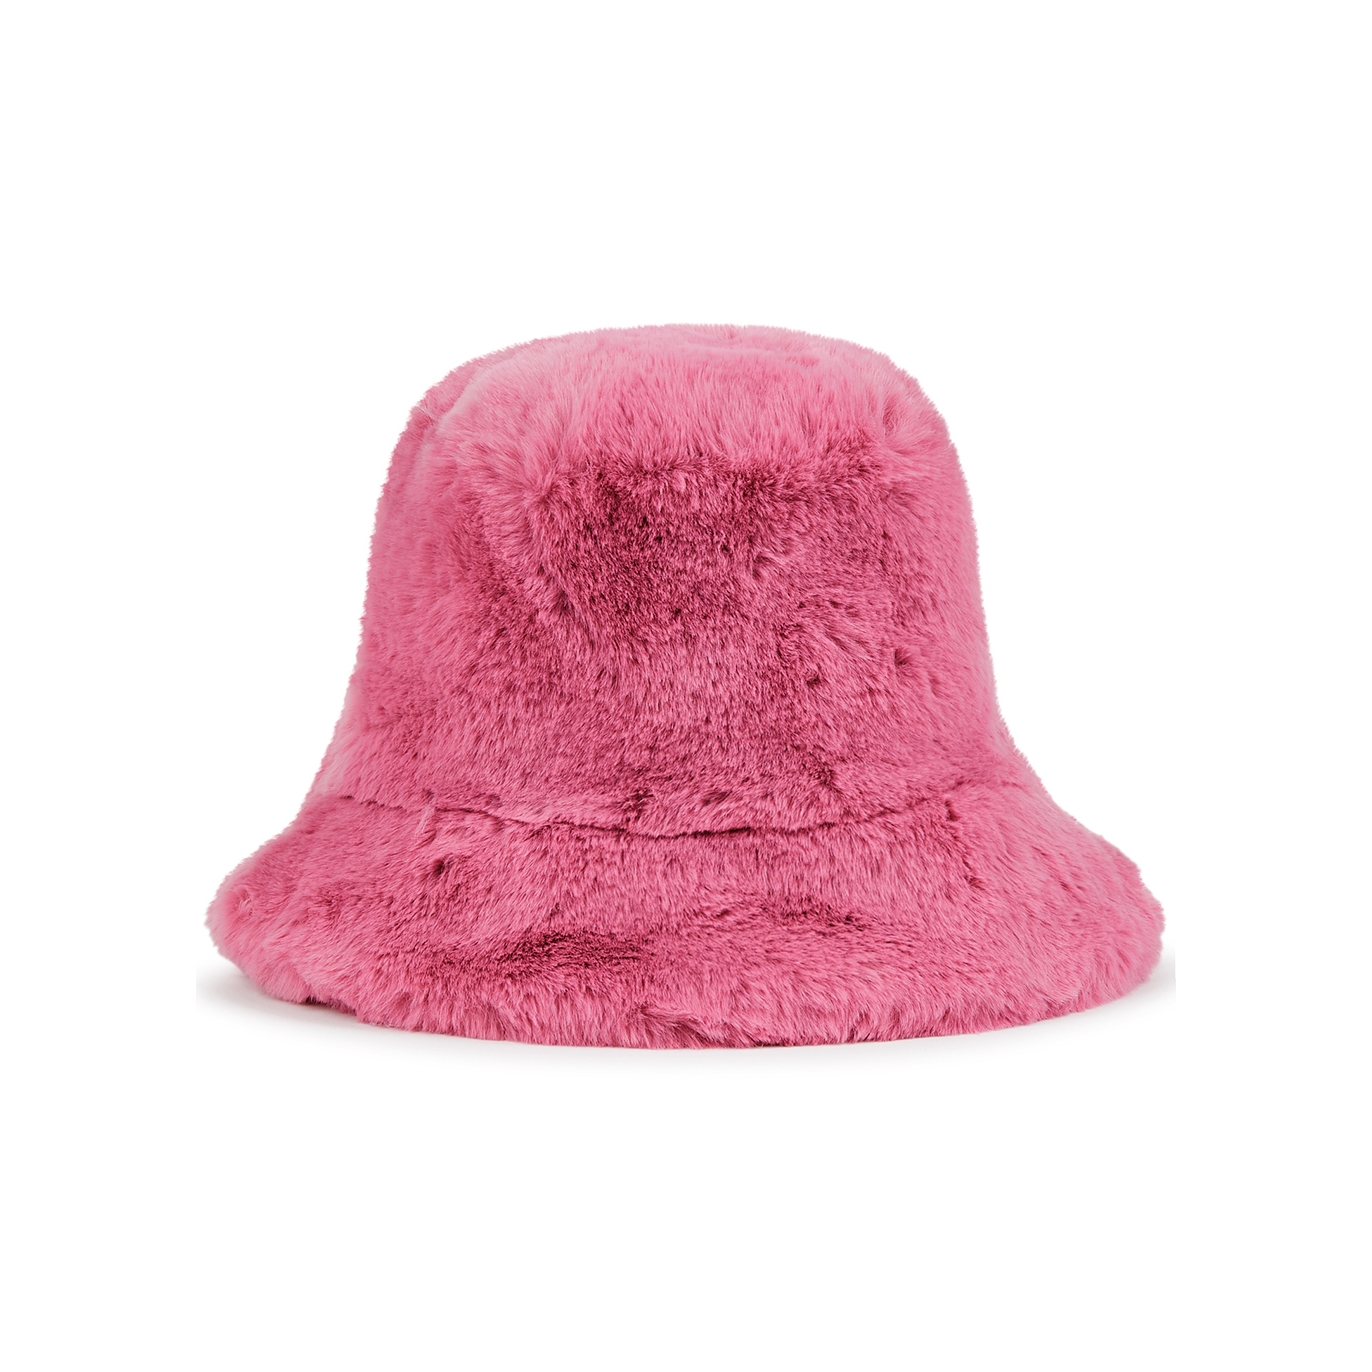 Jakke Hattie Pink Faux Fur Bucket Hat - Bright Pink - One Size